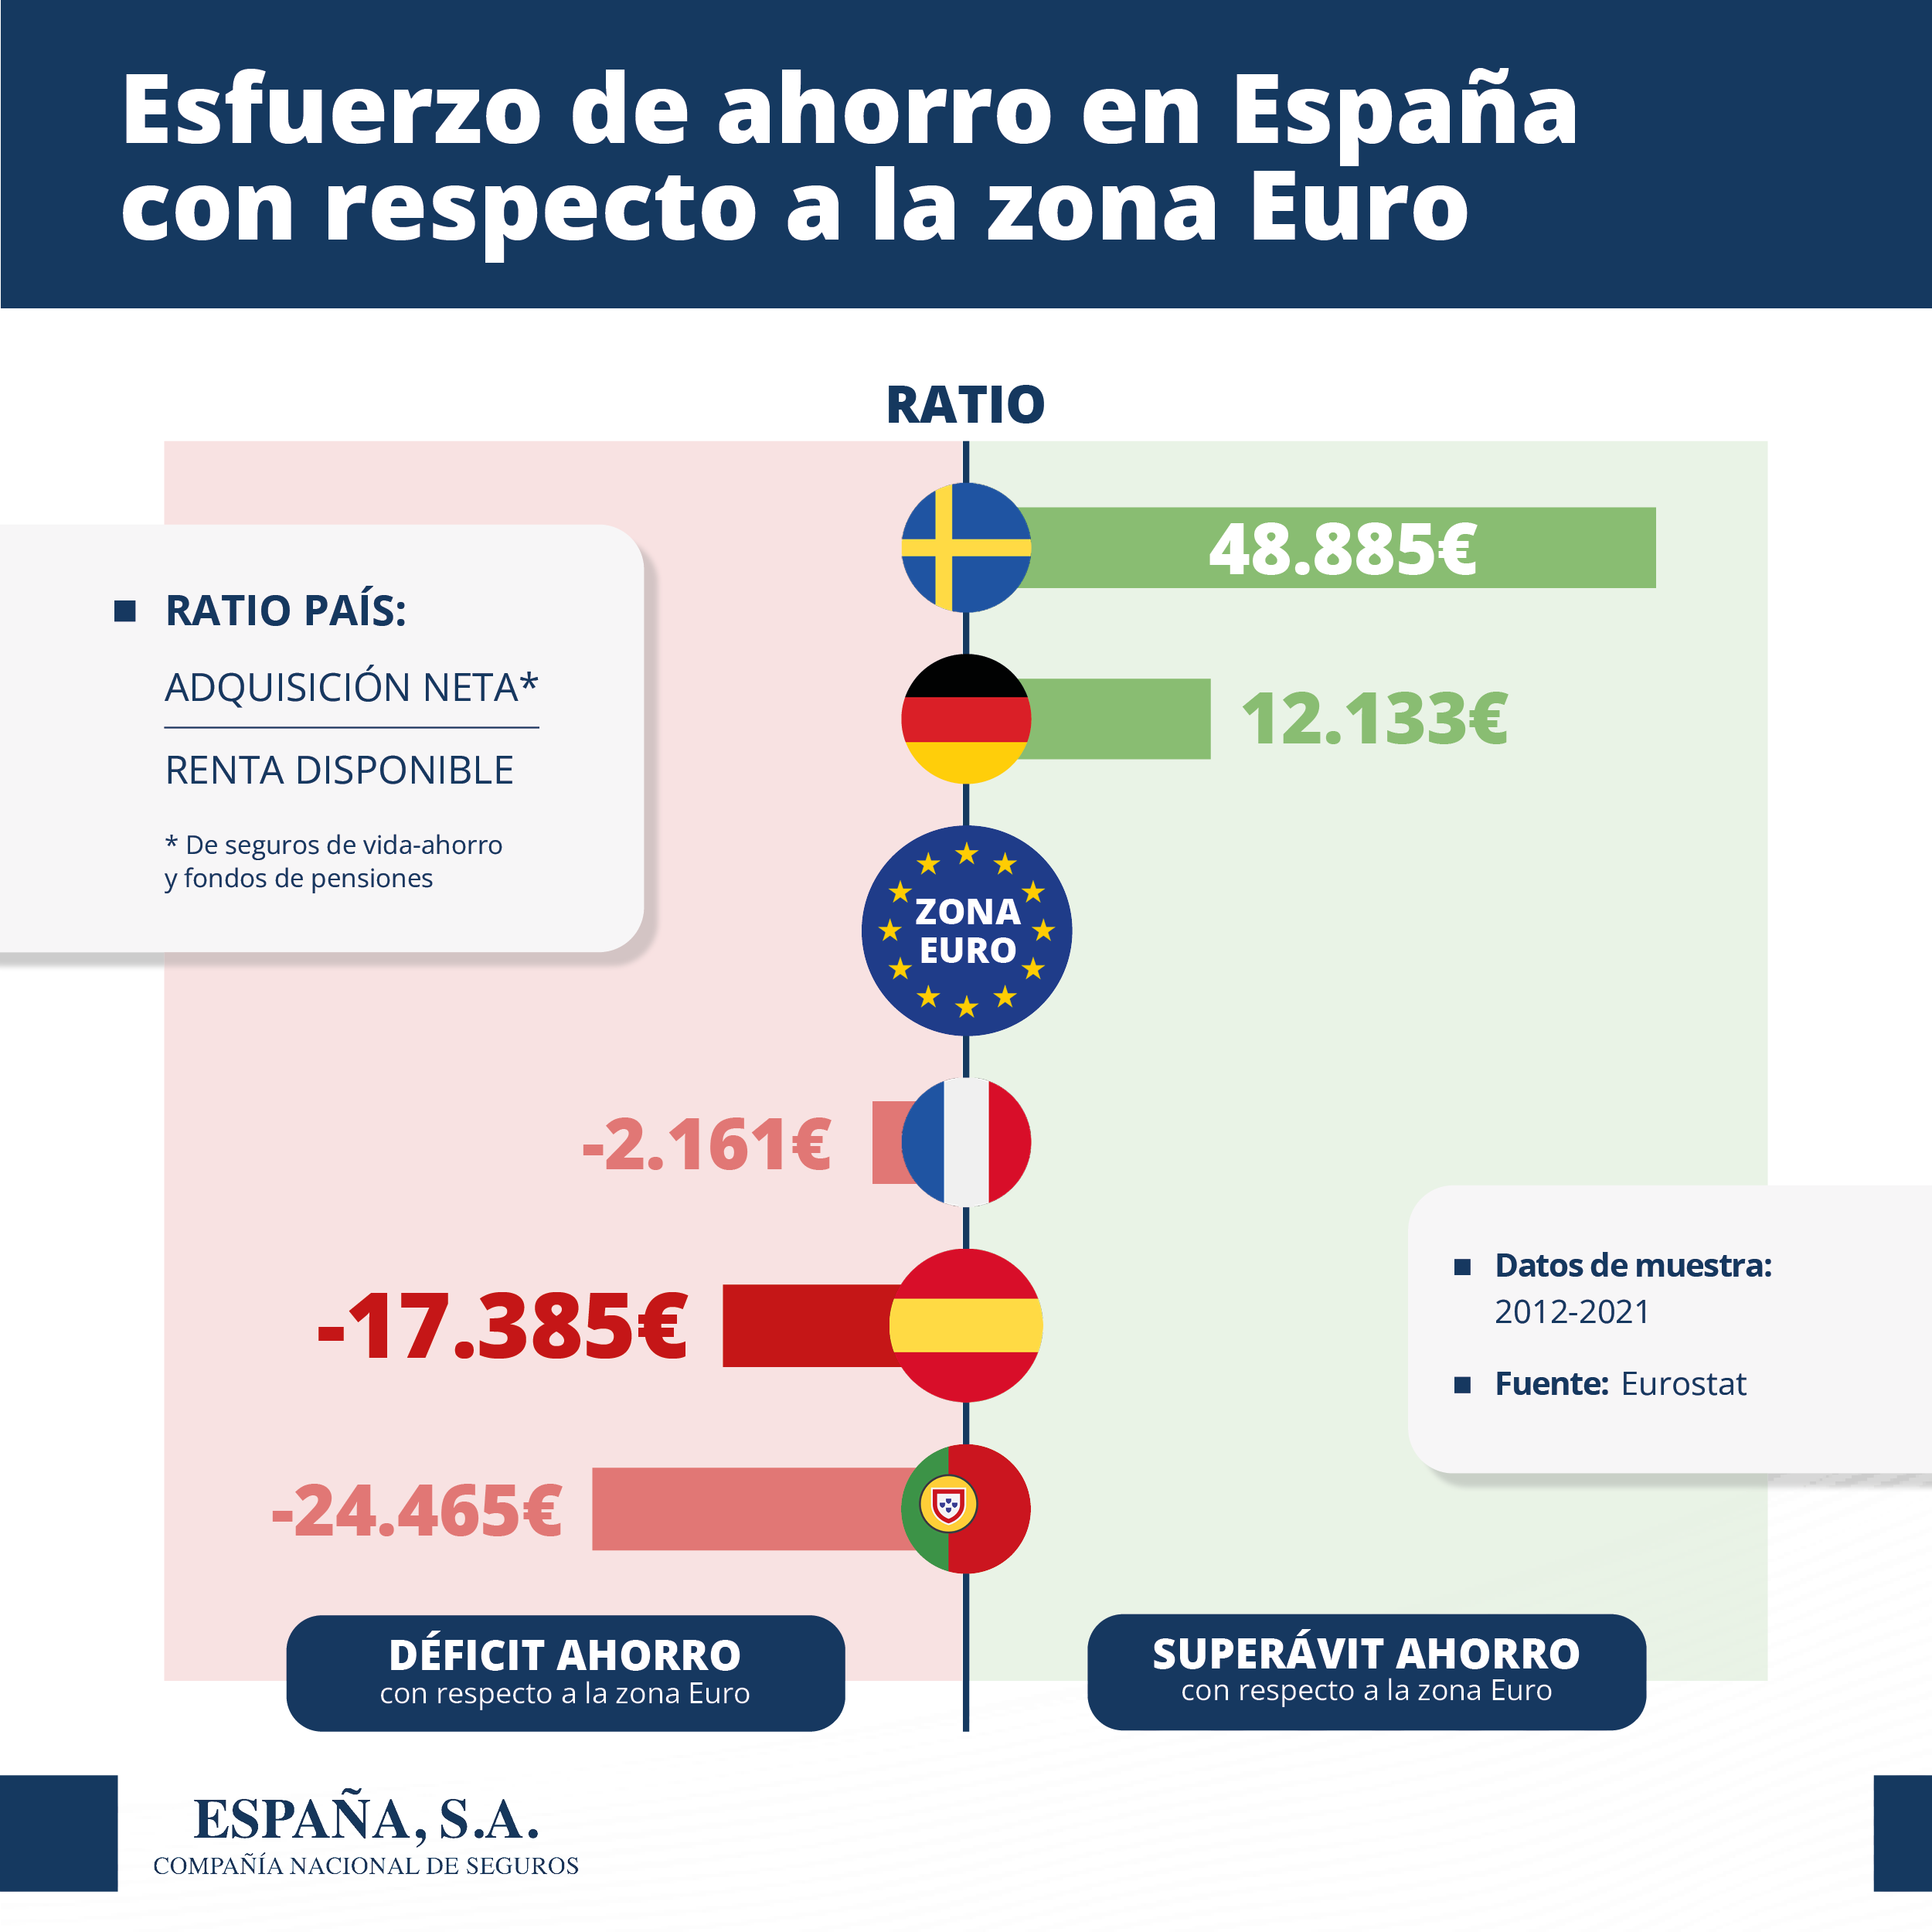 Esfuerzo de ahorro en España